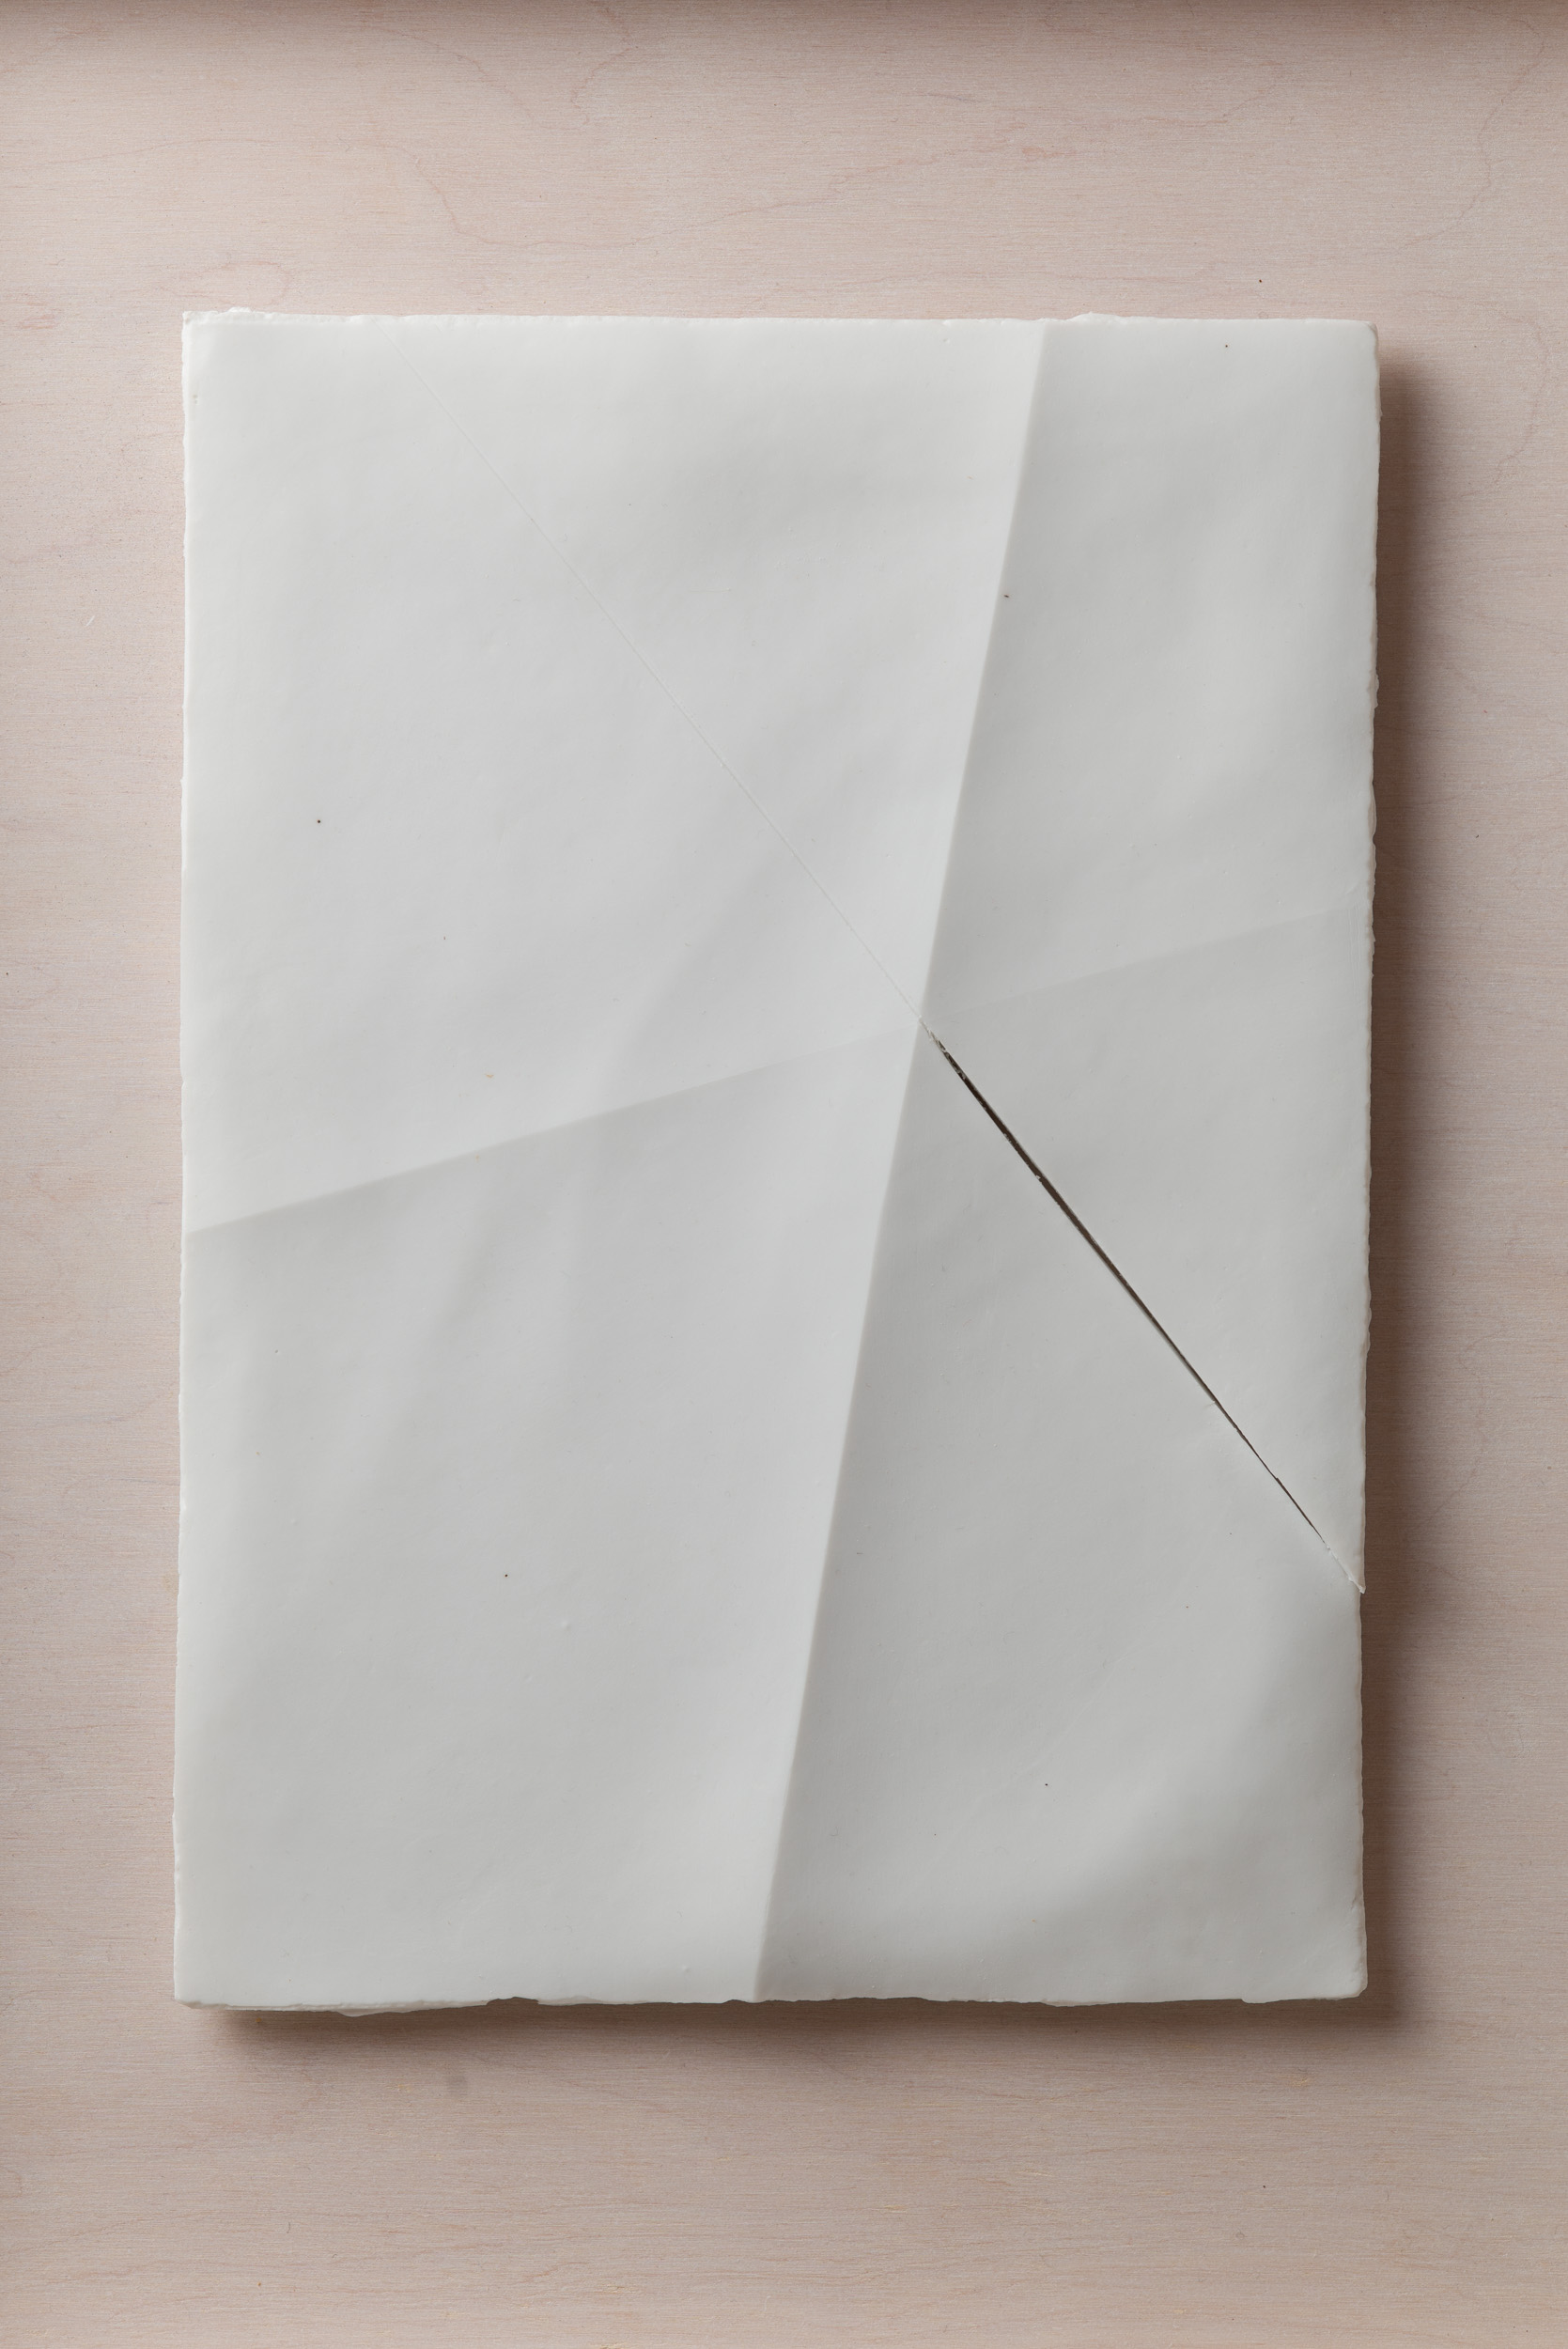 NÉMA Júlia: A4 III/III (2020) papírporcelán / paperporcelain 18 x 26 cm (31,6 x 38,6 x 3,5 cm) fotó: Czigány Ákos